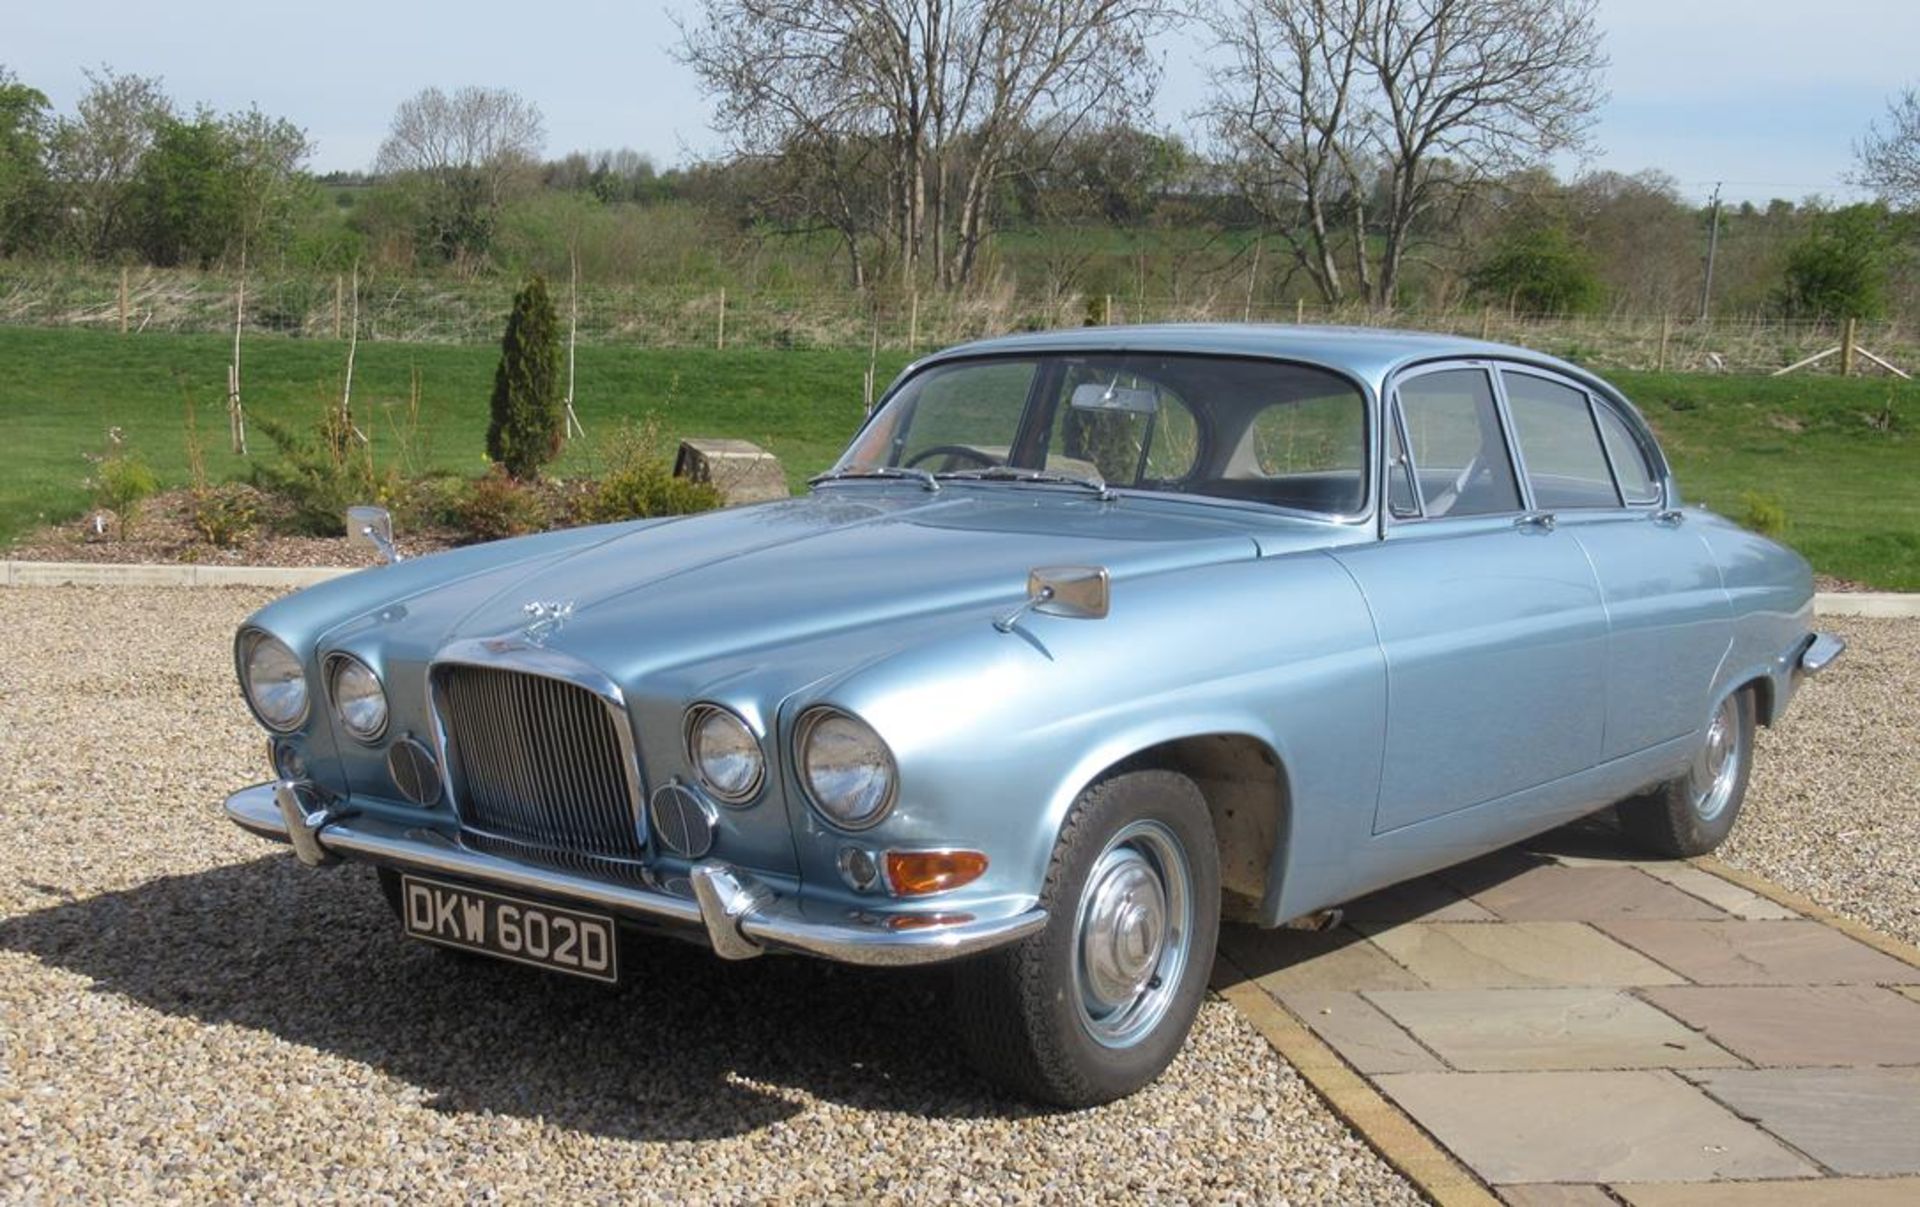 1966 Jaguar 4.2 MK10 Registration number: DKW602D Date of first registration: 1966 VIN number: